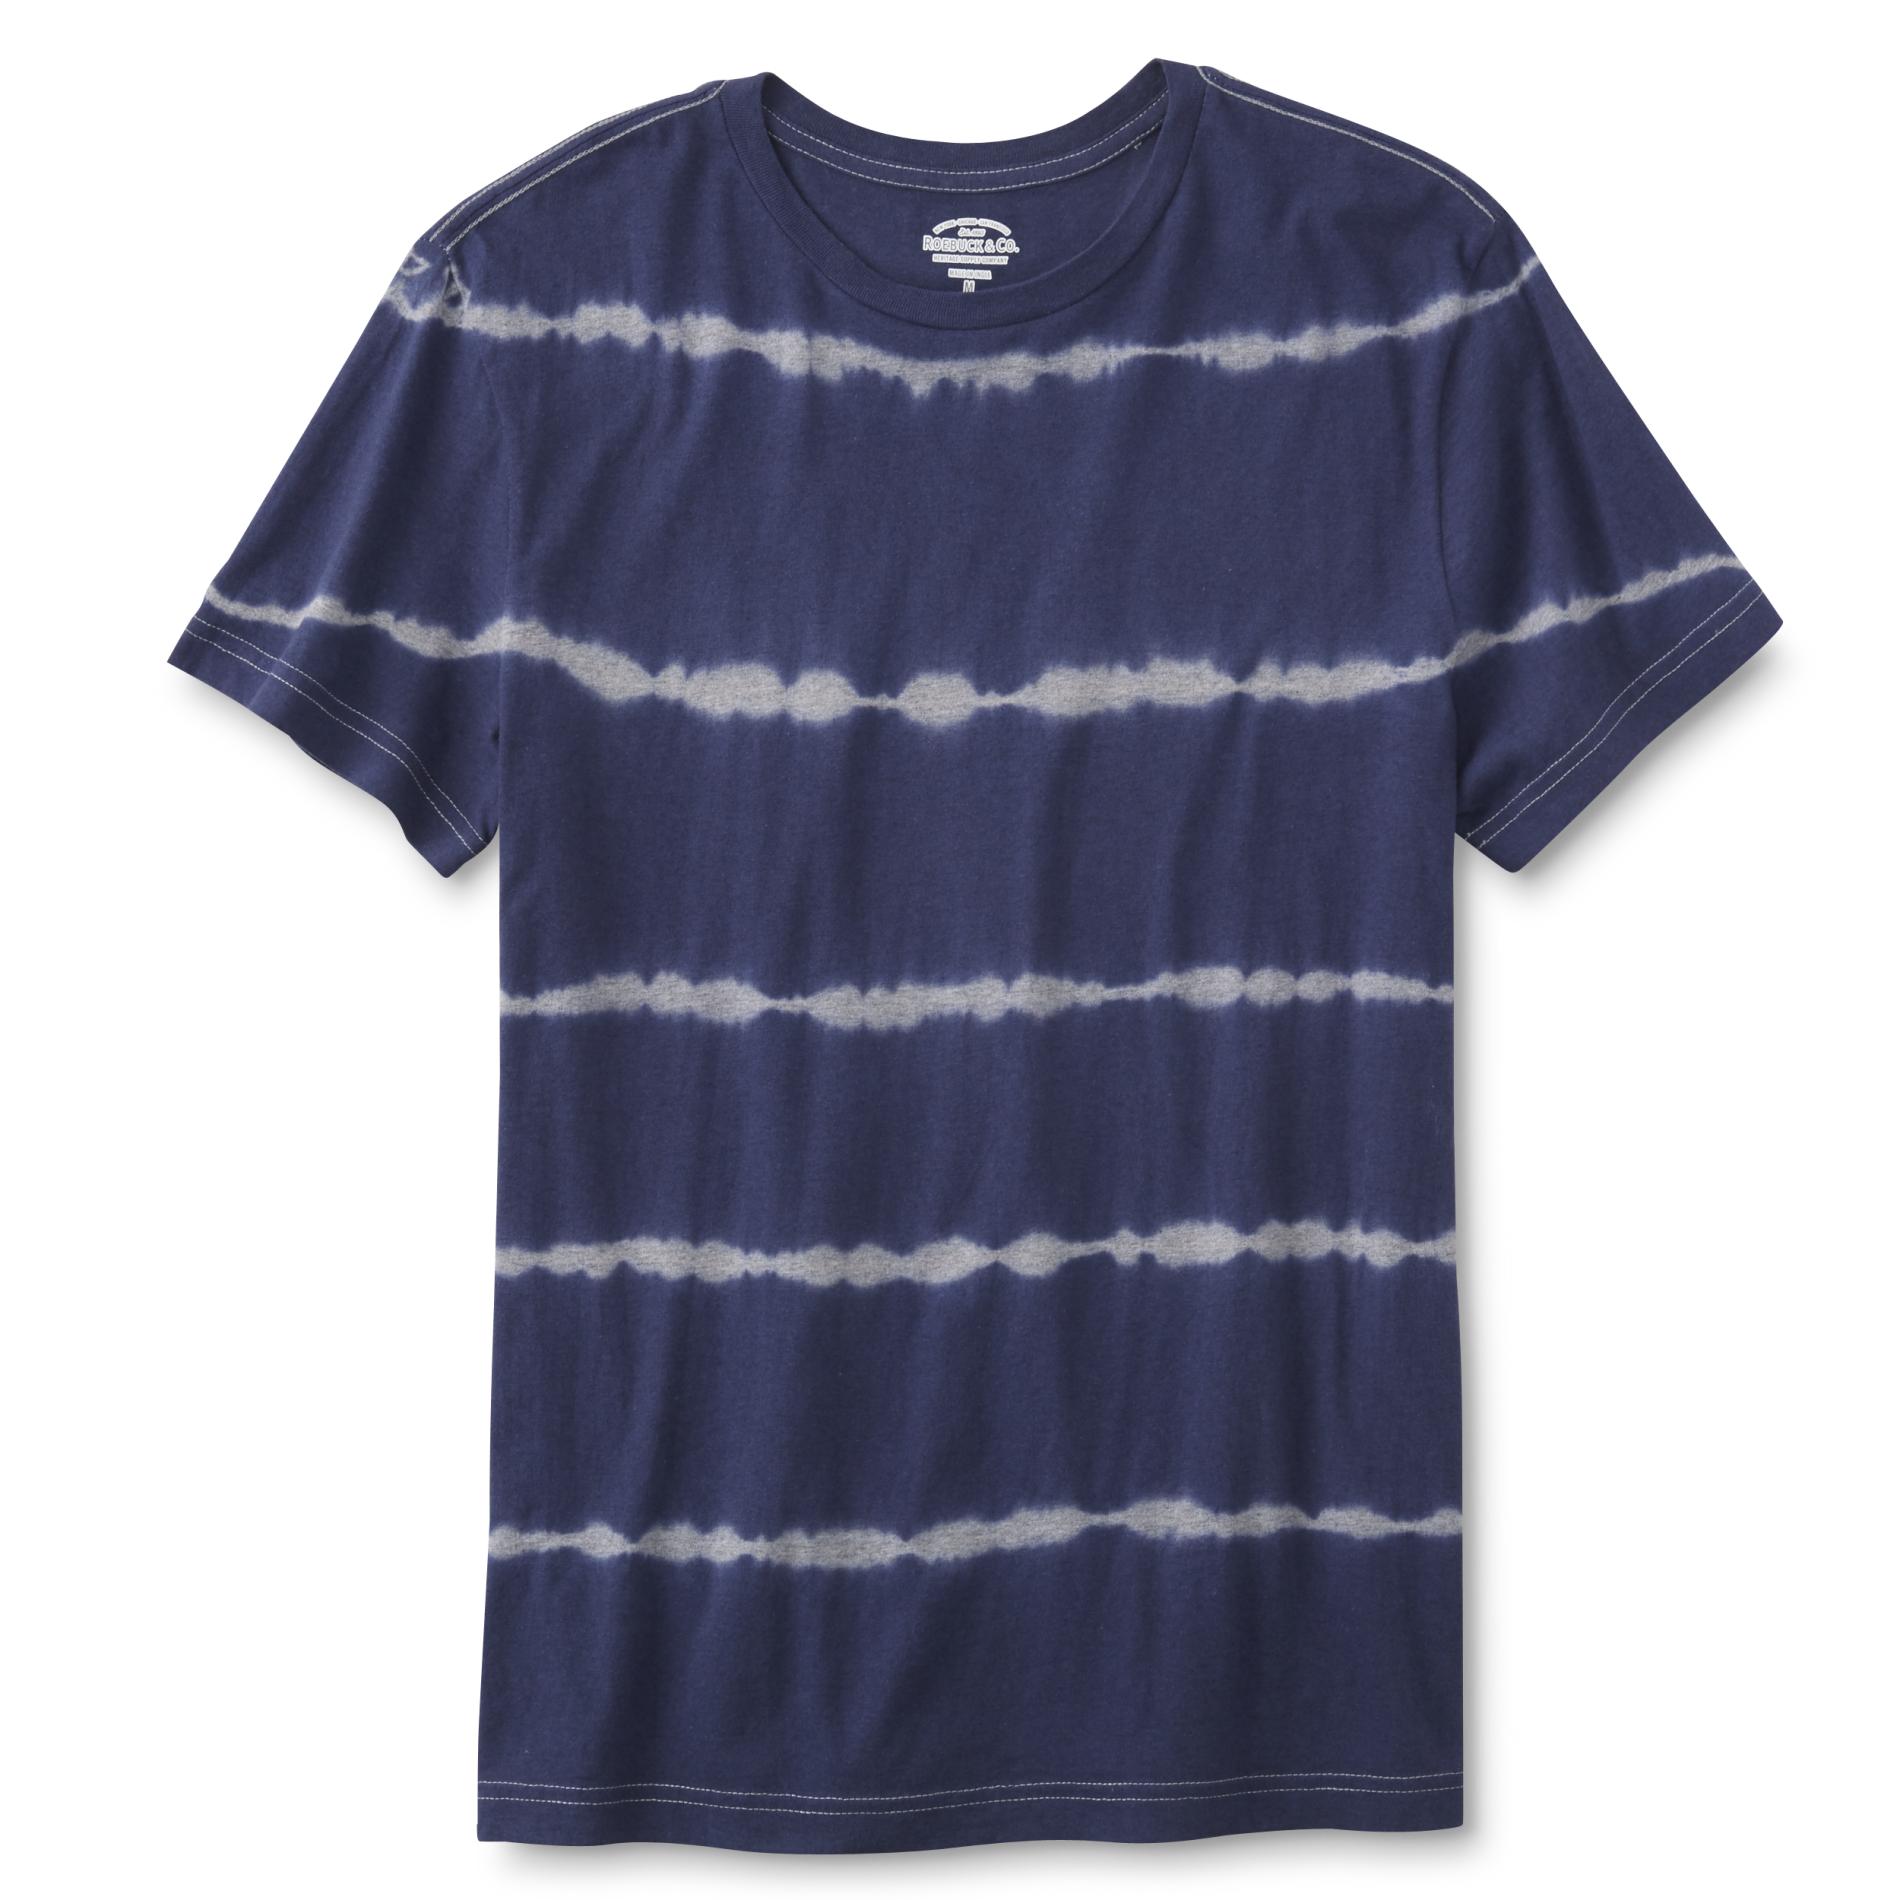 Roebuck & Co. Young Men's T-Shirt - Striped